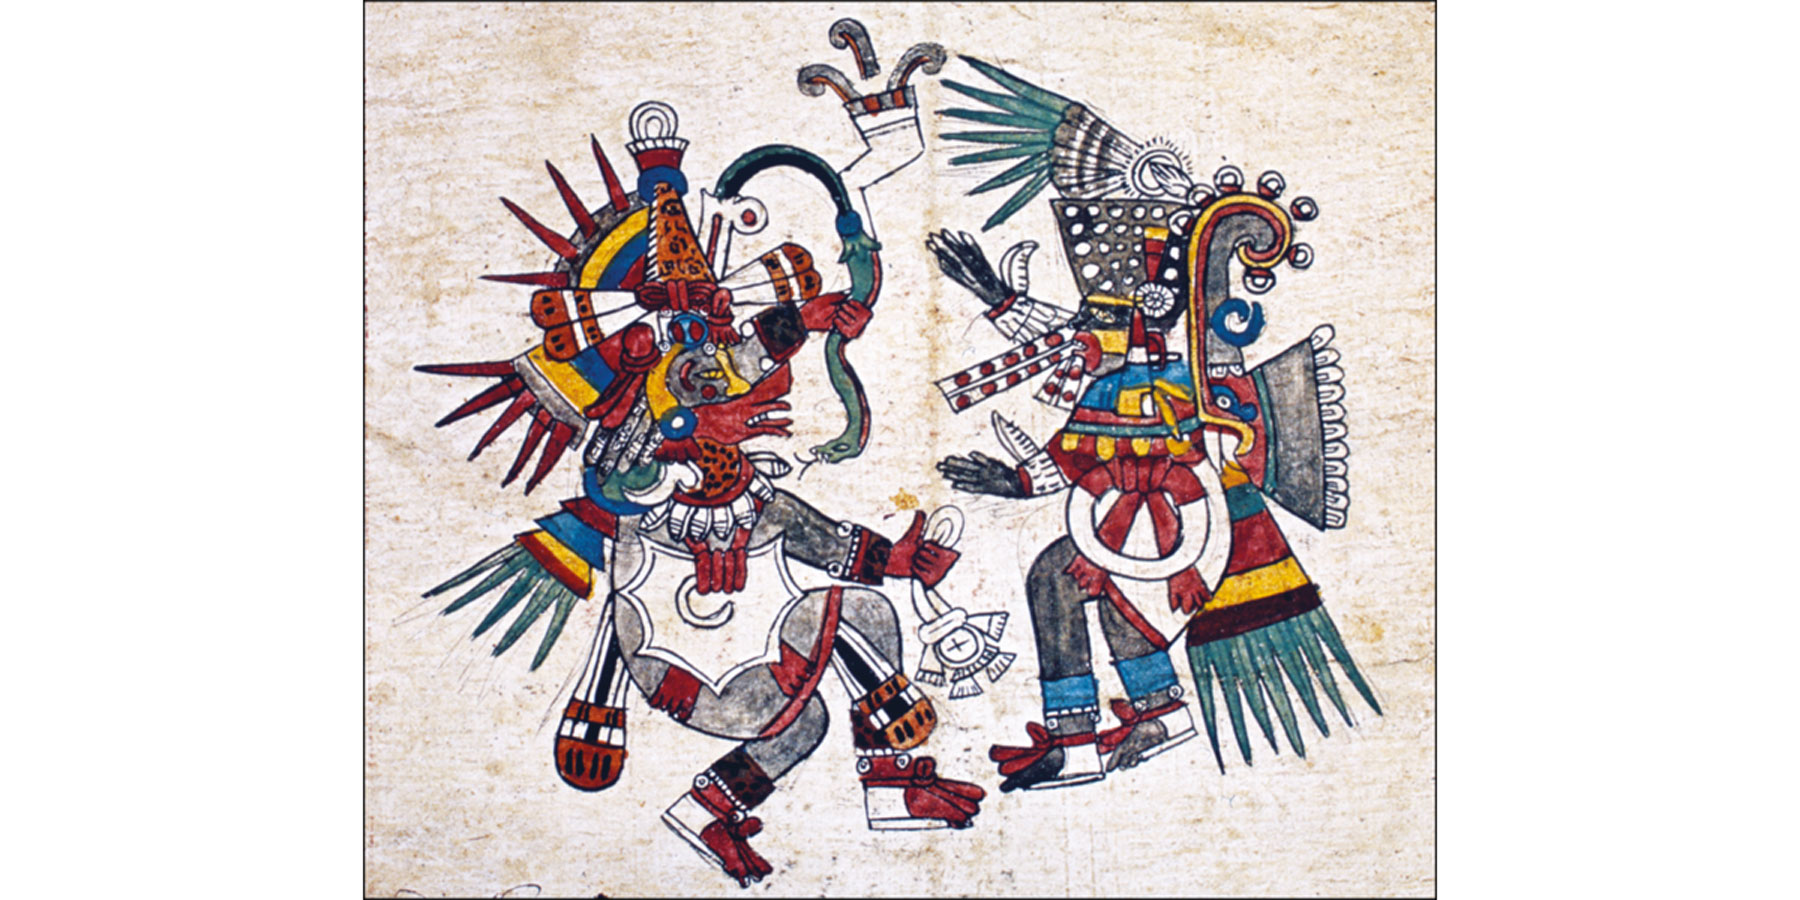 Quetzalcóatl-y-Tezcatlipoca,Códice Borbónico, Lám 22 detalle ,